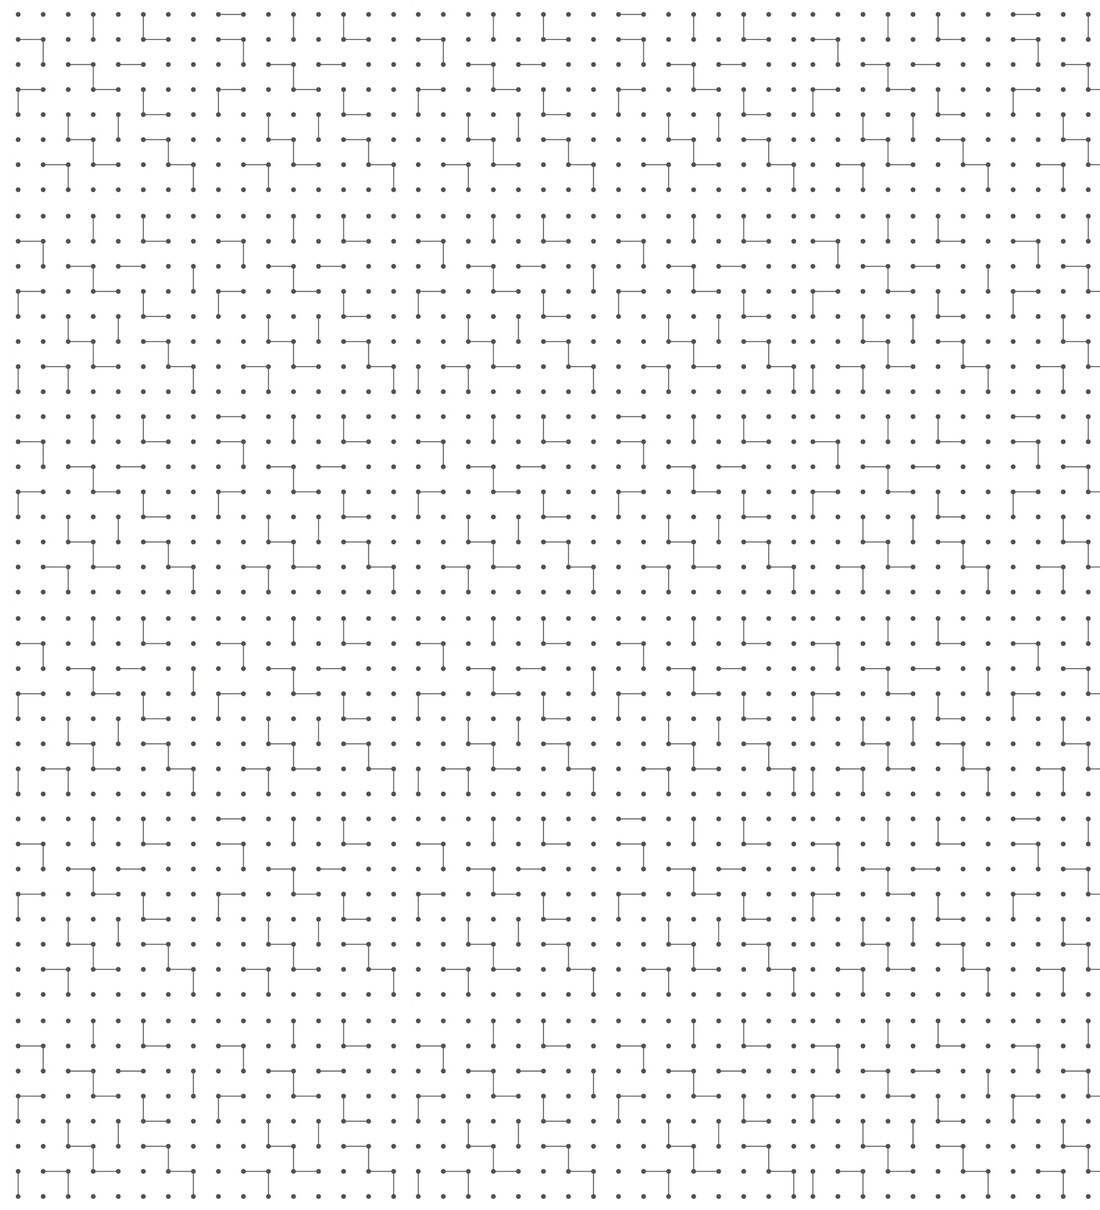 Centimeter dot grid paper